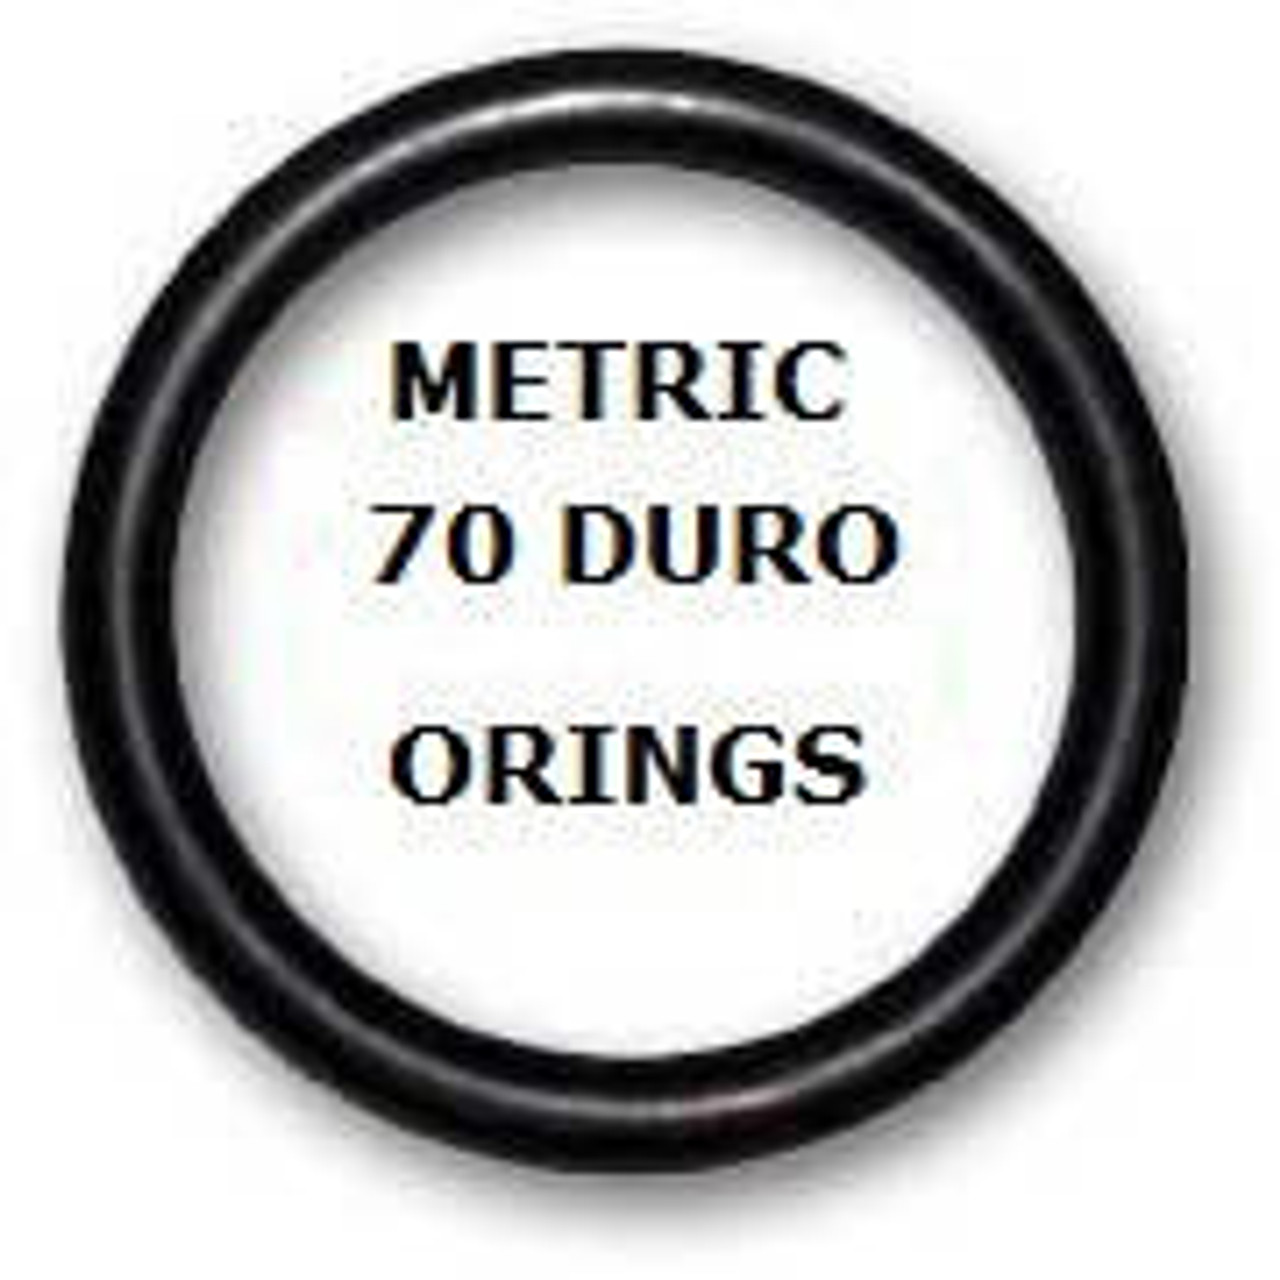 Metric Buna  O-rings 1.25 x 1mm  Minimum 25 pcs